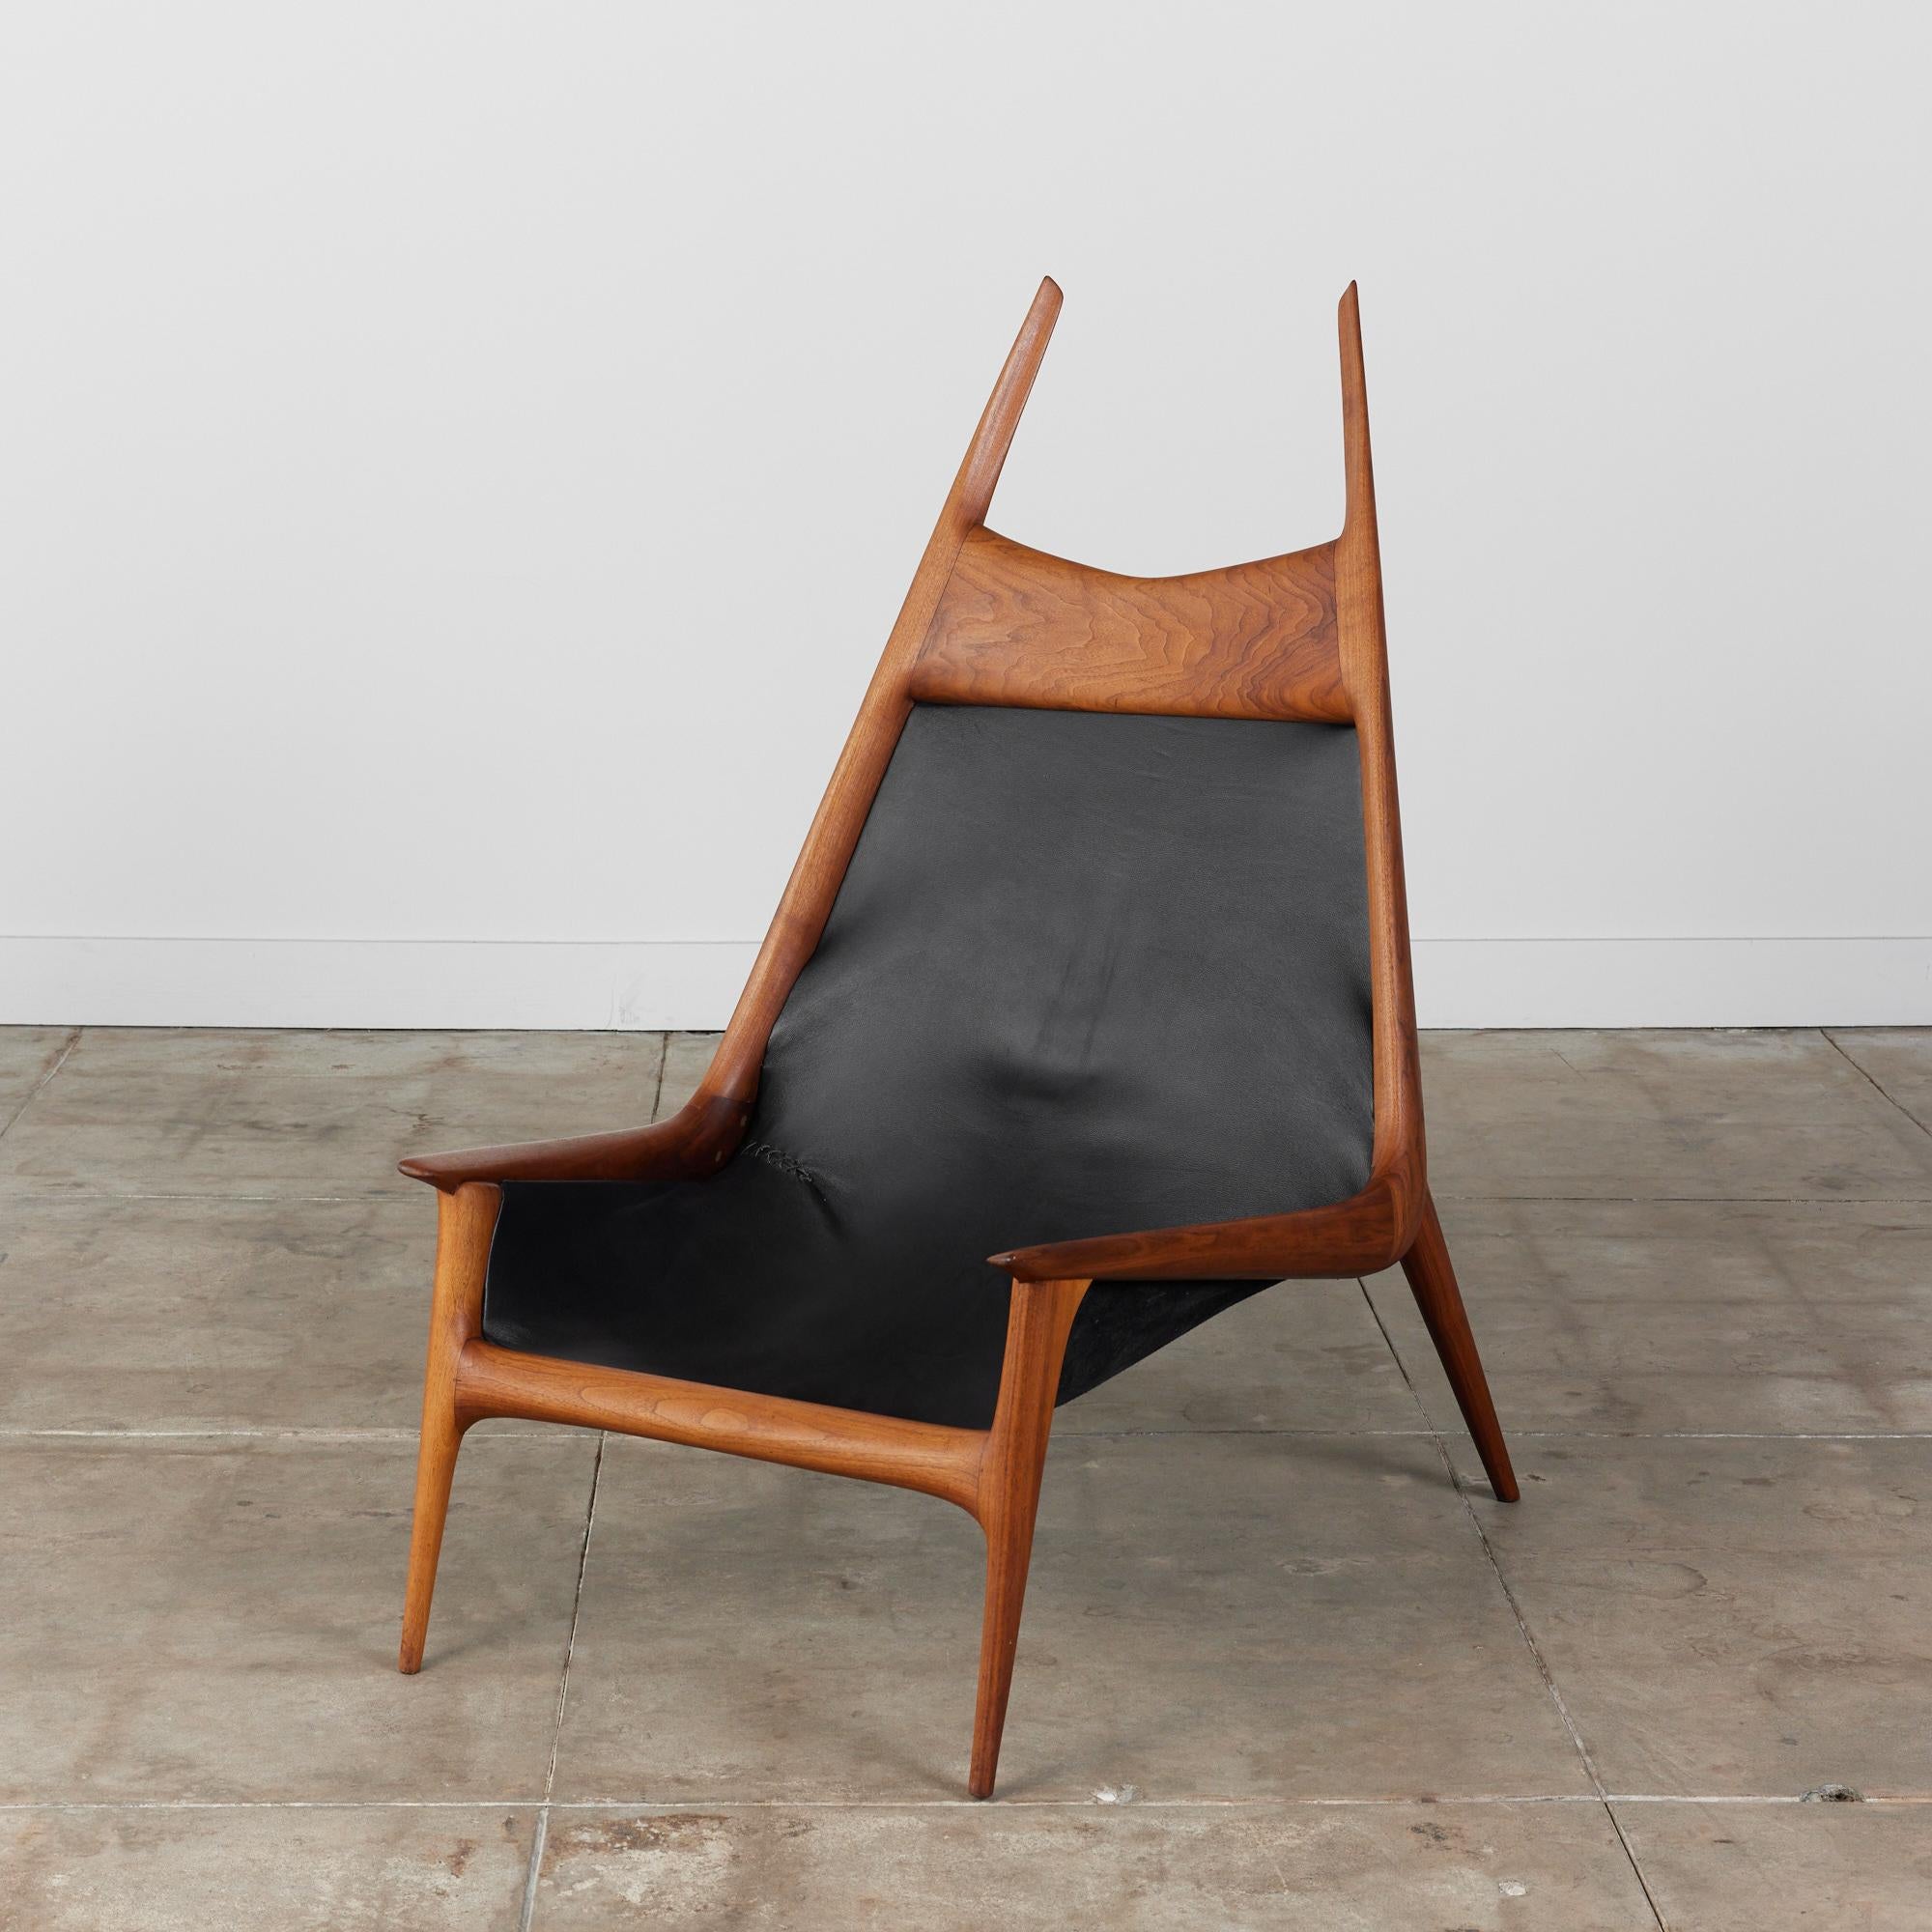 Studio Craft Lounge Chair von Meister John Karpilow, ca. 1960, USA. Der Kunsthandwerker aus der Bay Area schuf dieses beeindruckende Stück, das als 